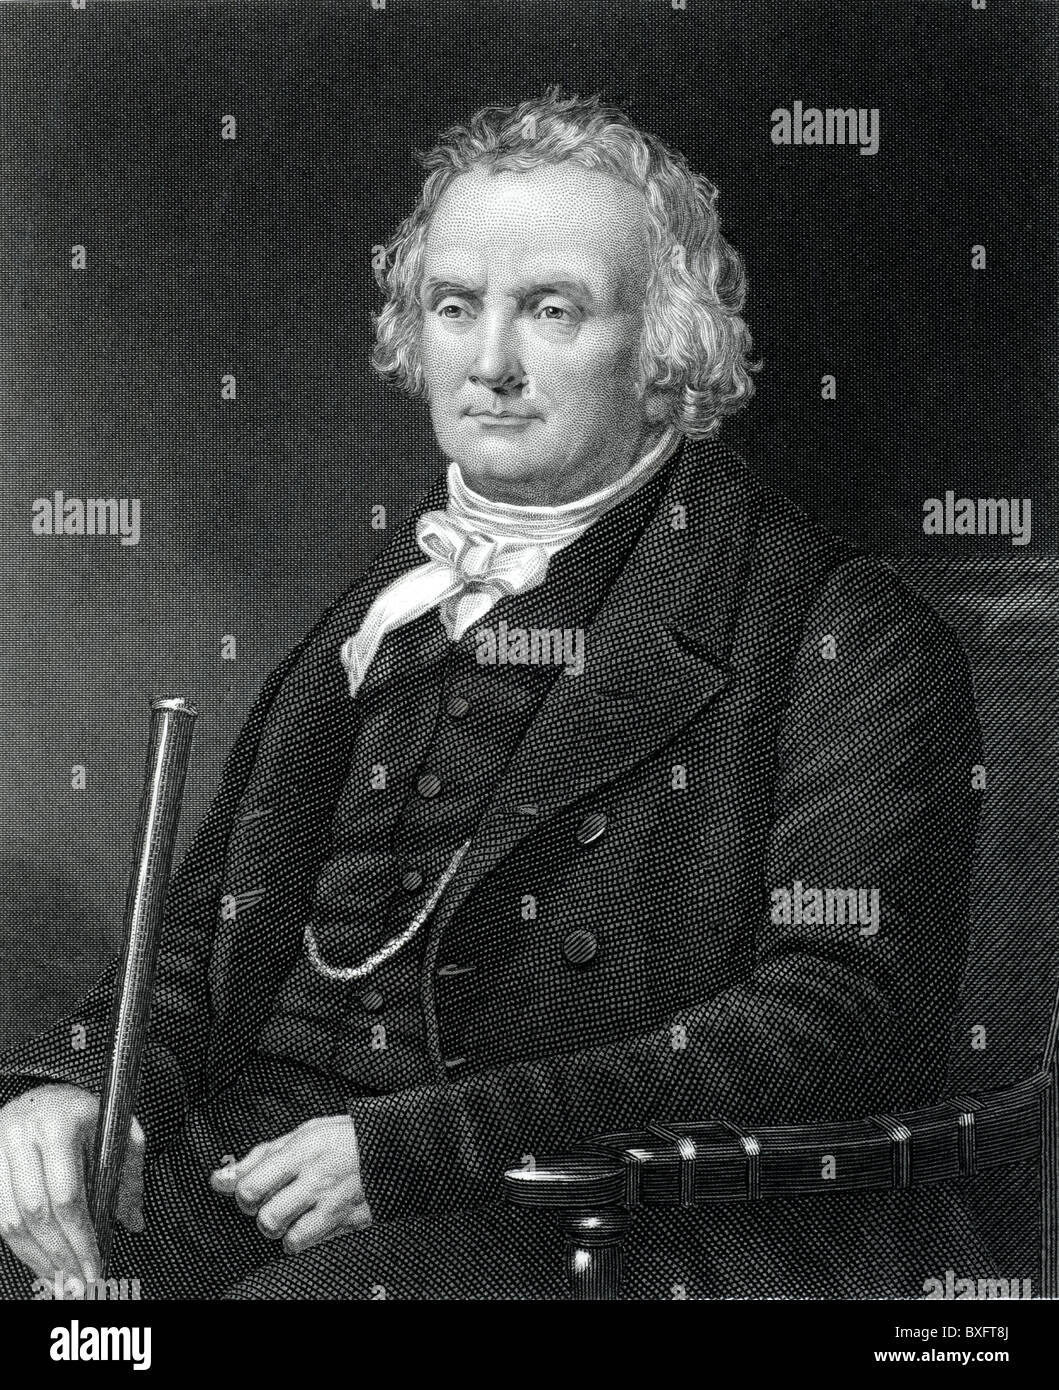 Portrait du révérend Thomas Chalmers (1780-1847) mathématicien écossais, économiste et chef de l'Église libre d'Écosse (c19th Engraving) Vintage Illustration ou gravure Banque D'Images